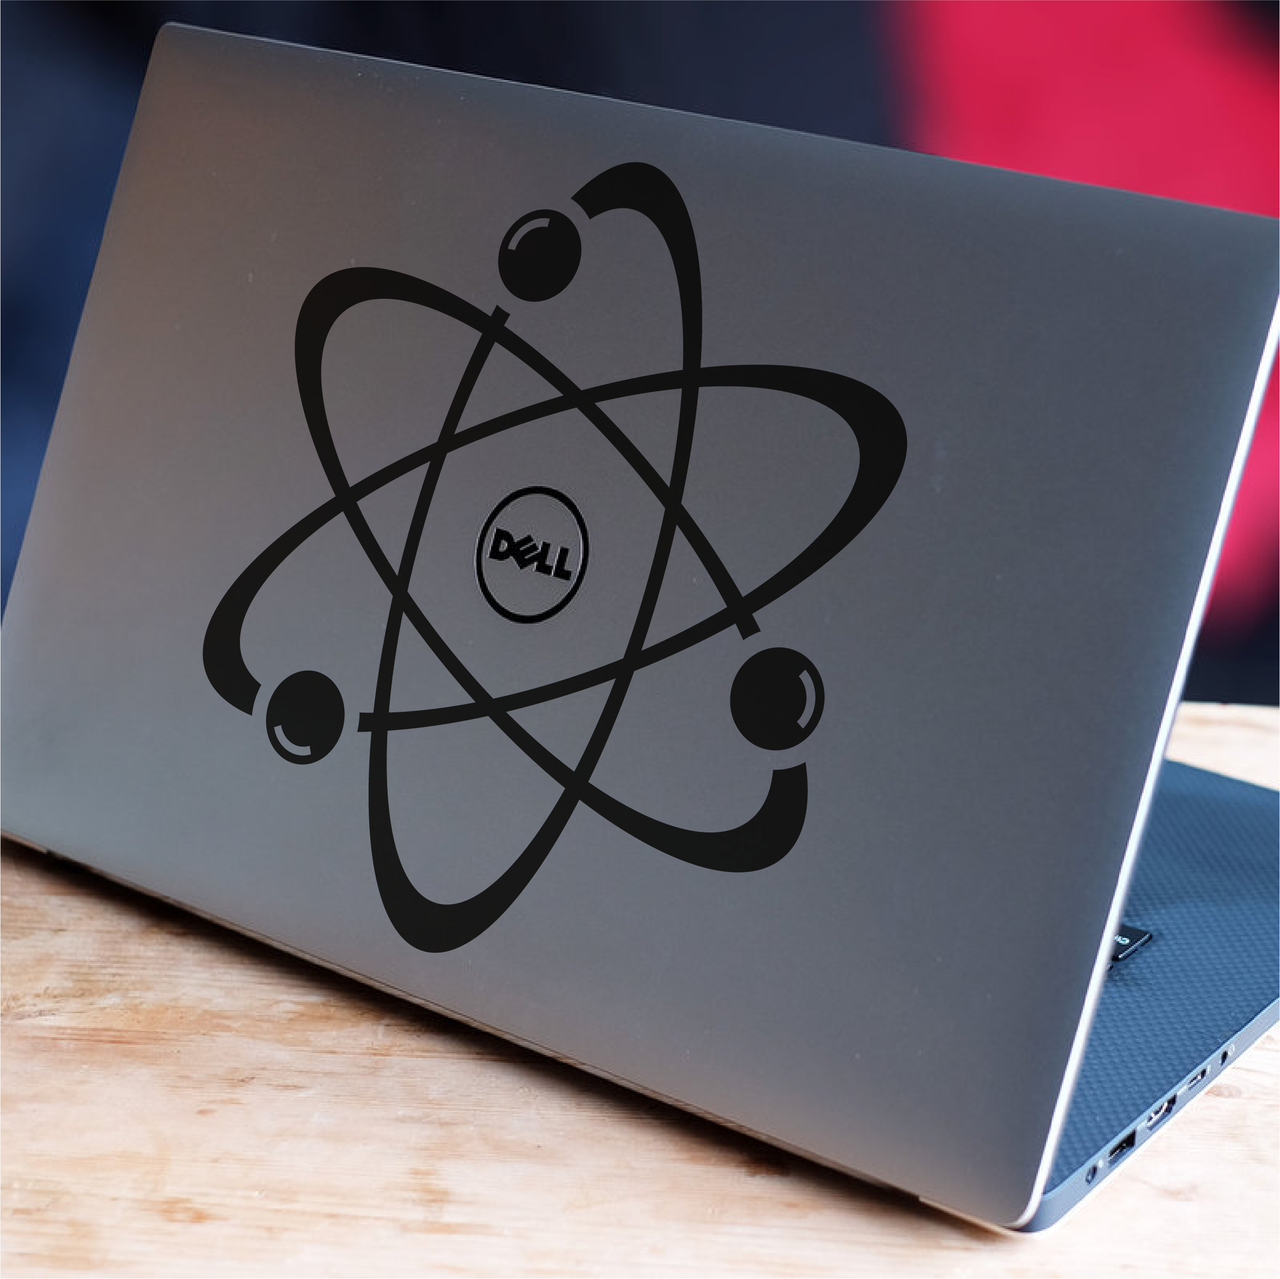 Big Bang Atom Laptop Decal